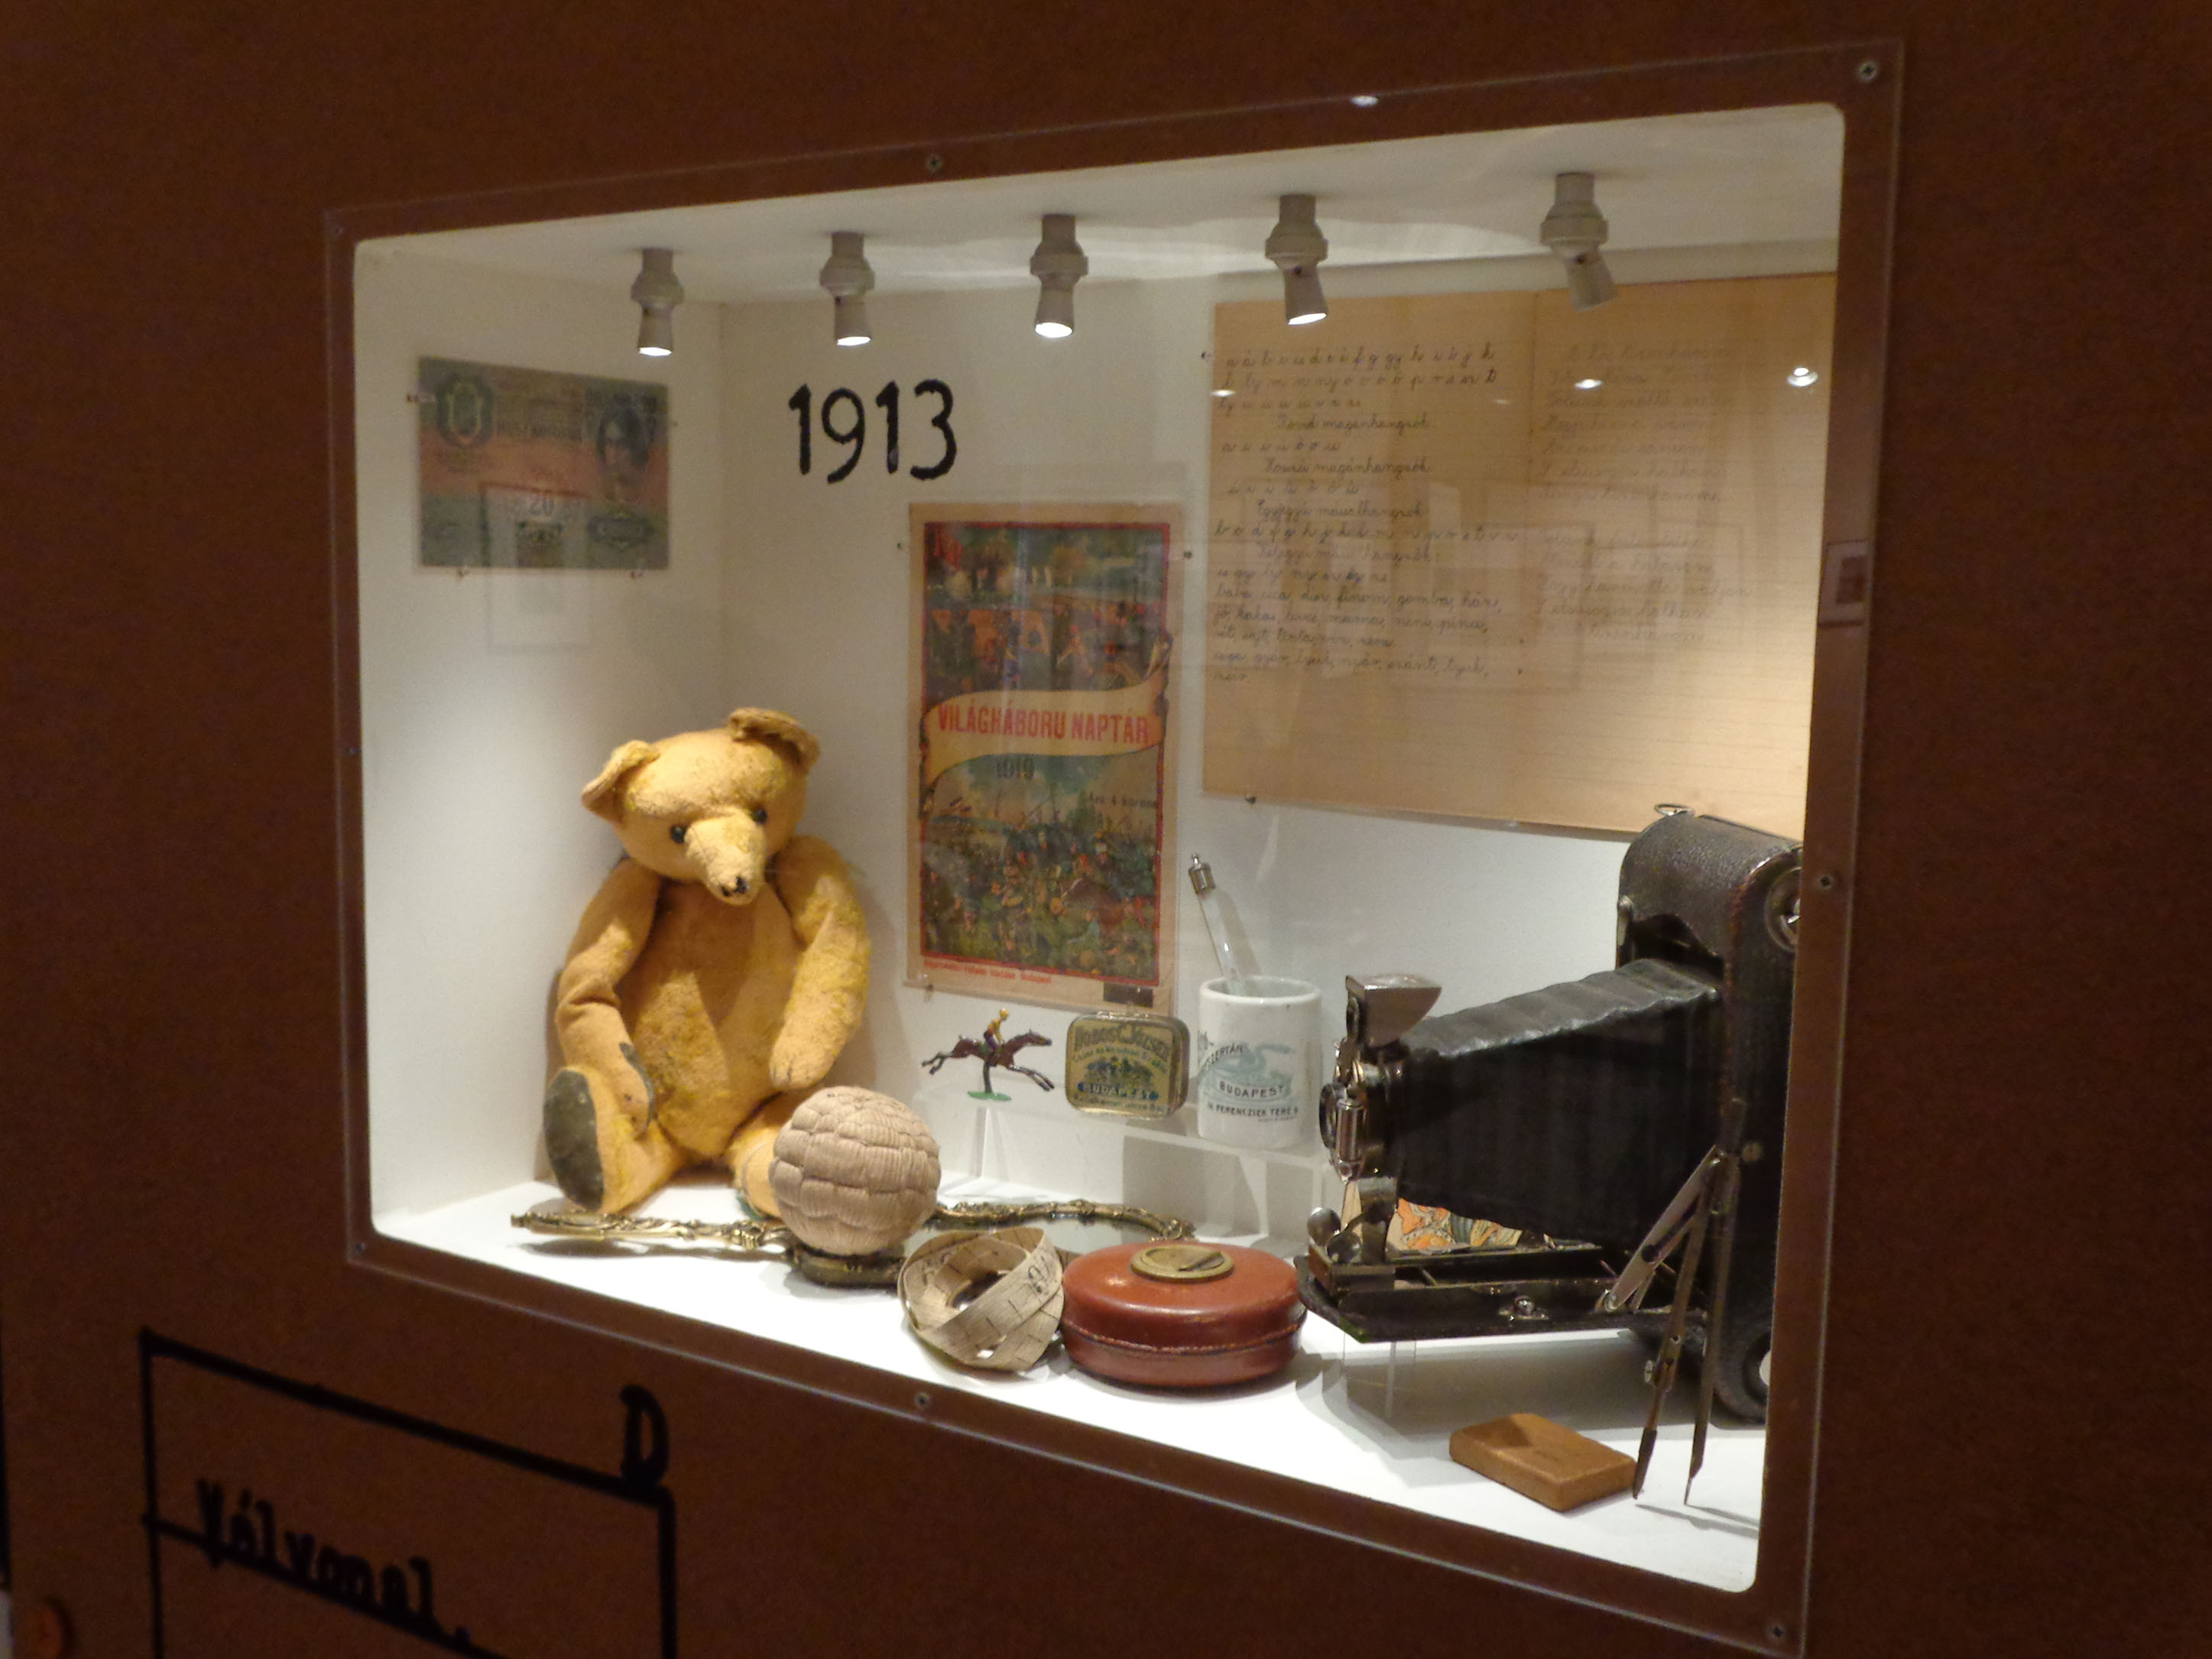 Einige der Objekte in der Ausstellung: Woher allerdings der Bär, die Kamera und der Kalender stammen, erfährt der Besucher nicht.